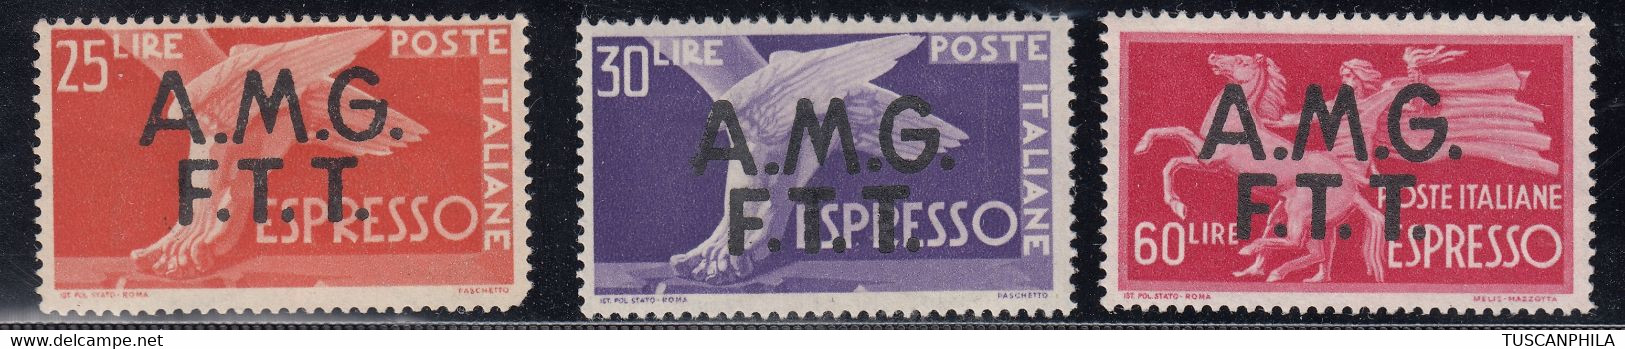 Trieste AMG-FTT Espressi Sass. 2/4 MNH** Cv. 300 - Express Mail